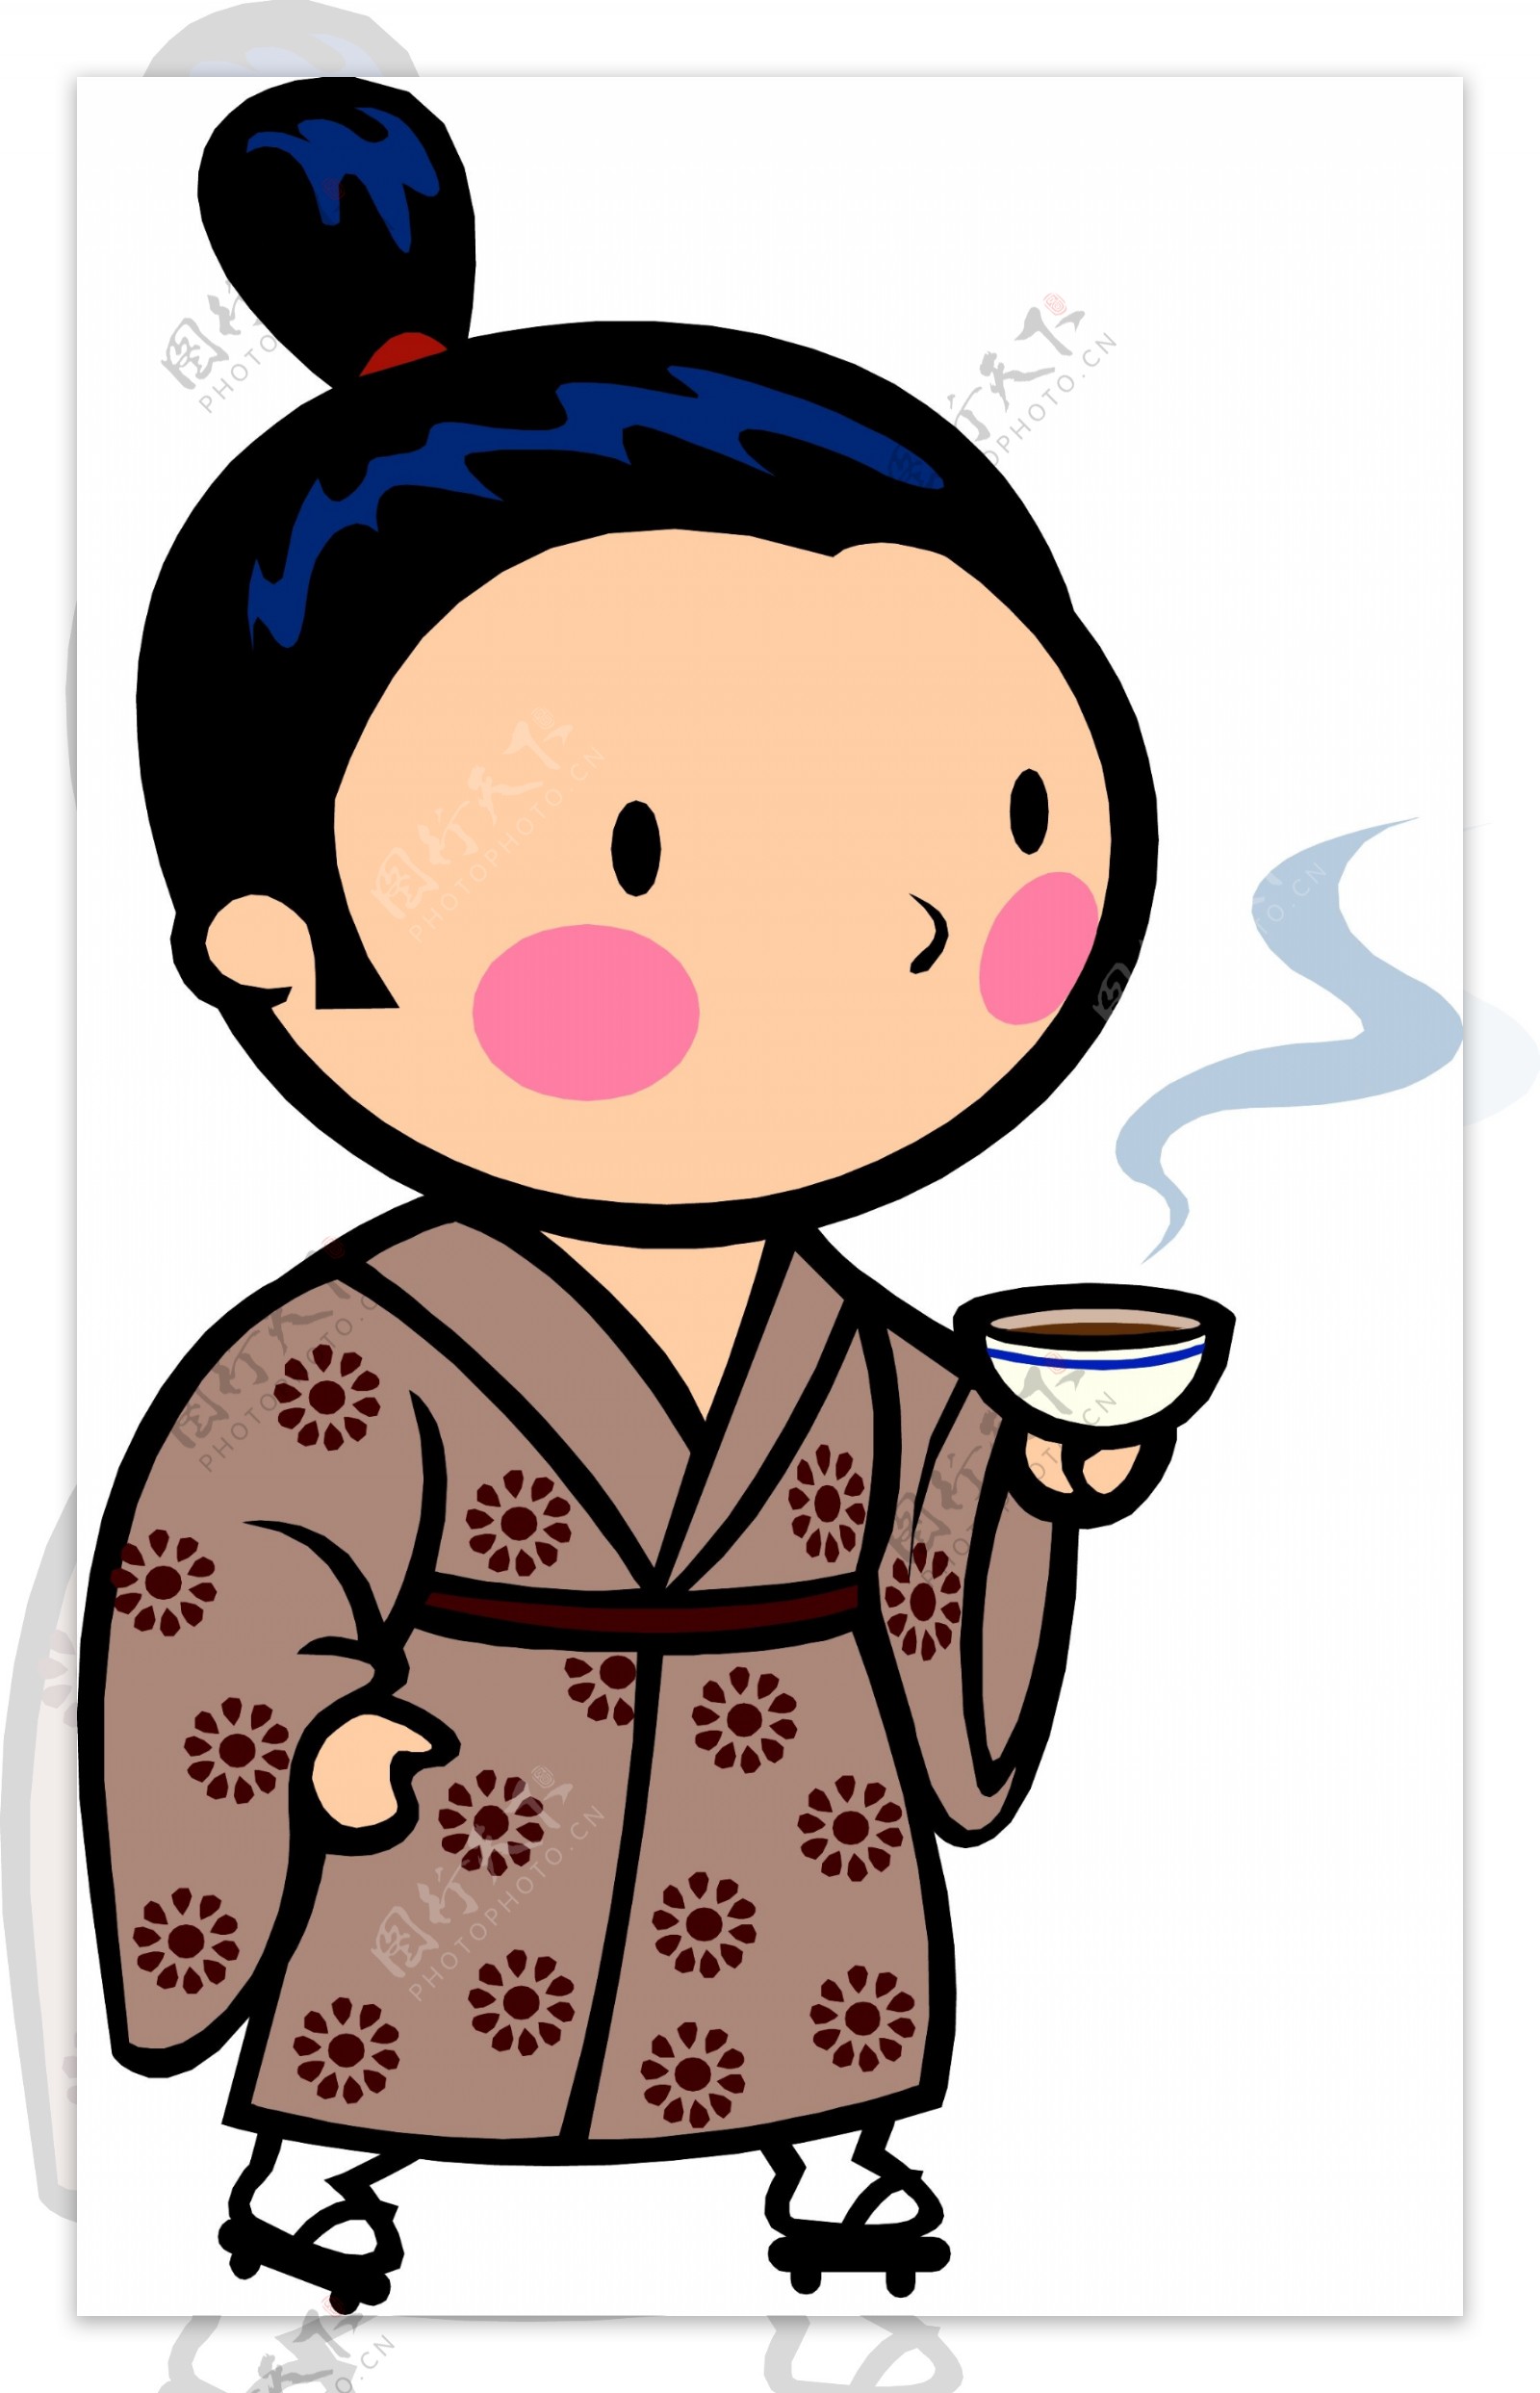 端着咖啡的日本小女孩